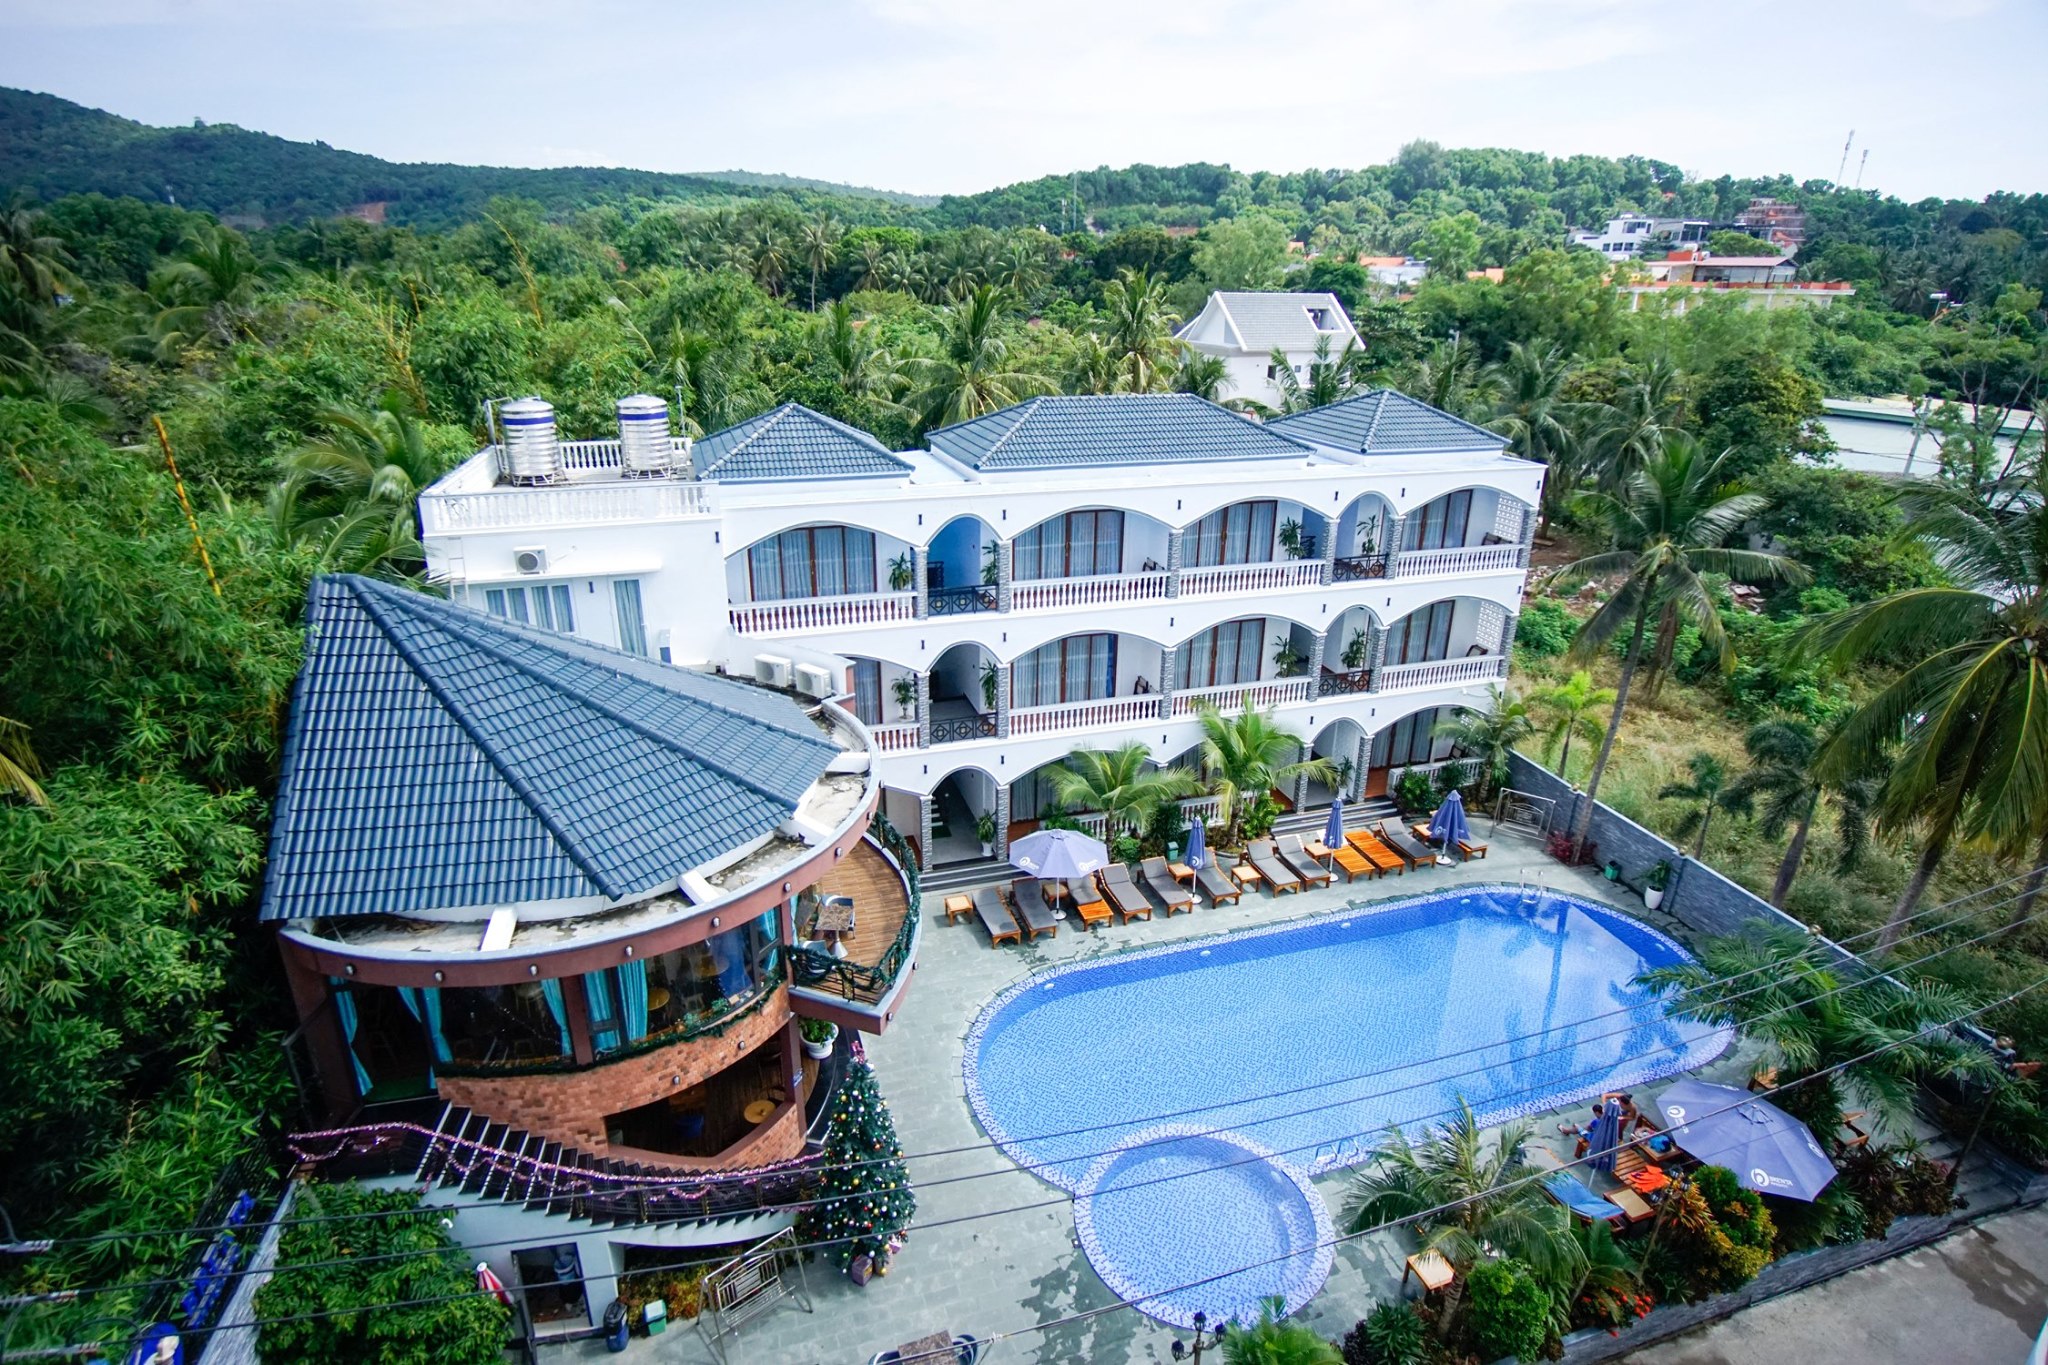 Brenta Phu Quoc Hotel: Ốc đảo kiều diễm giữa thiên nhiên